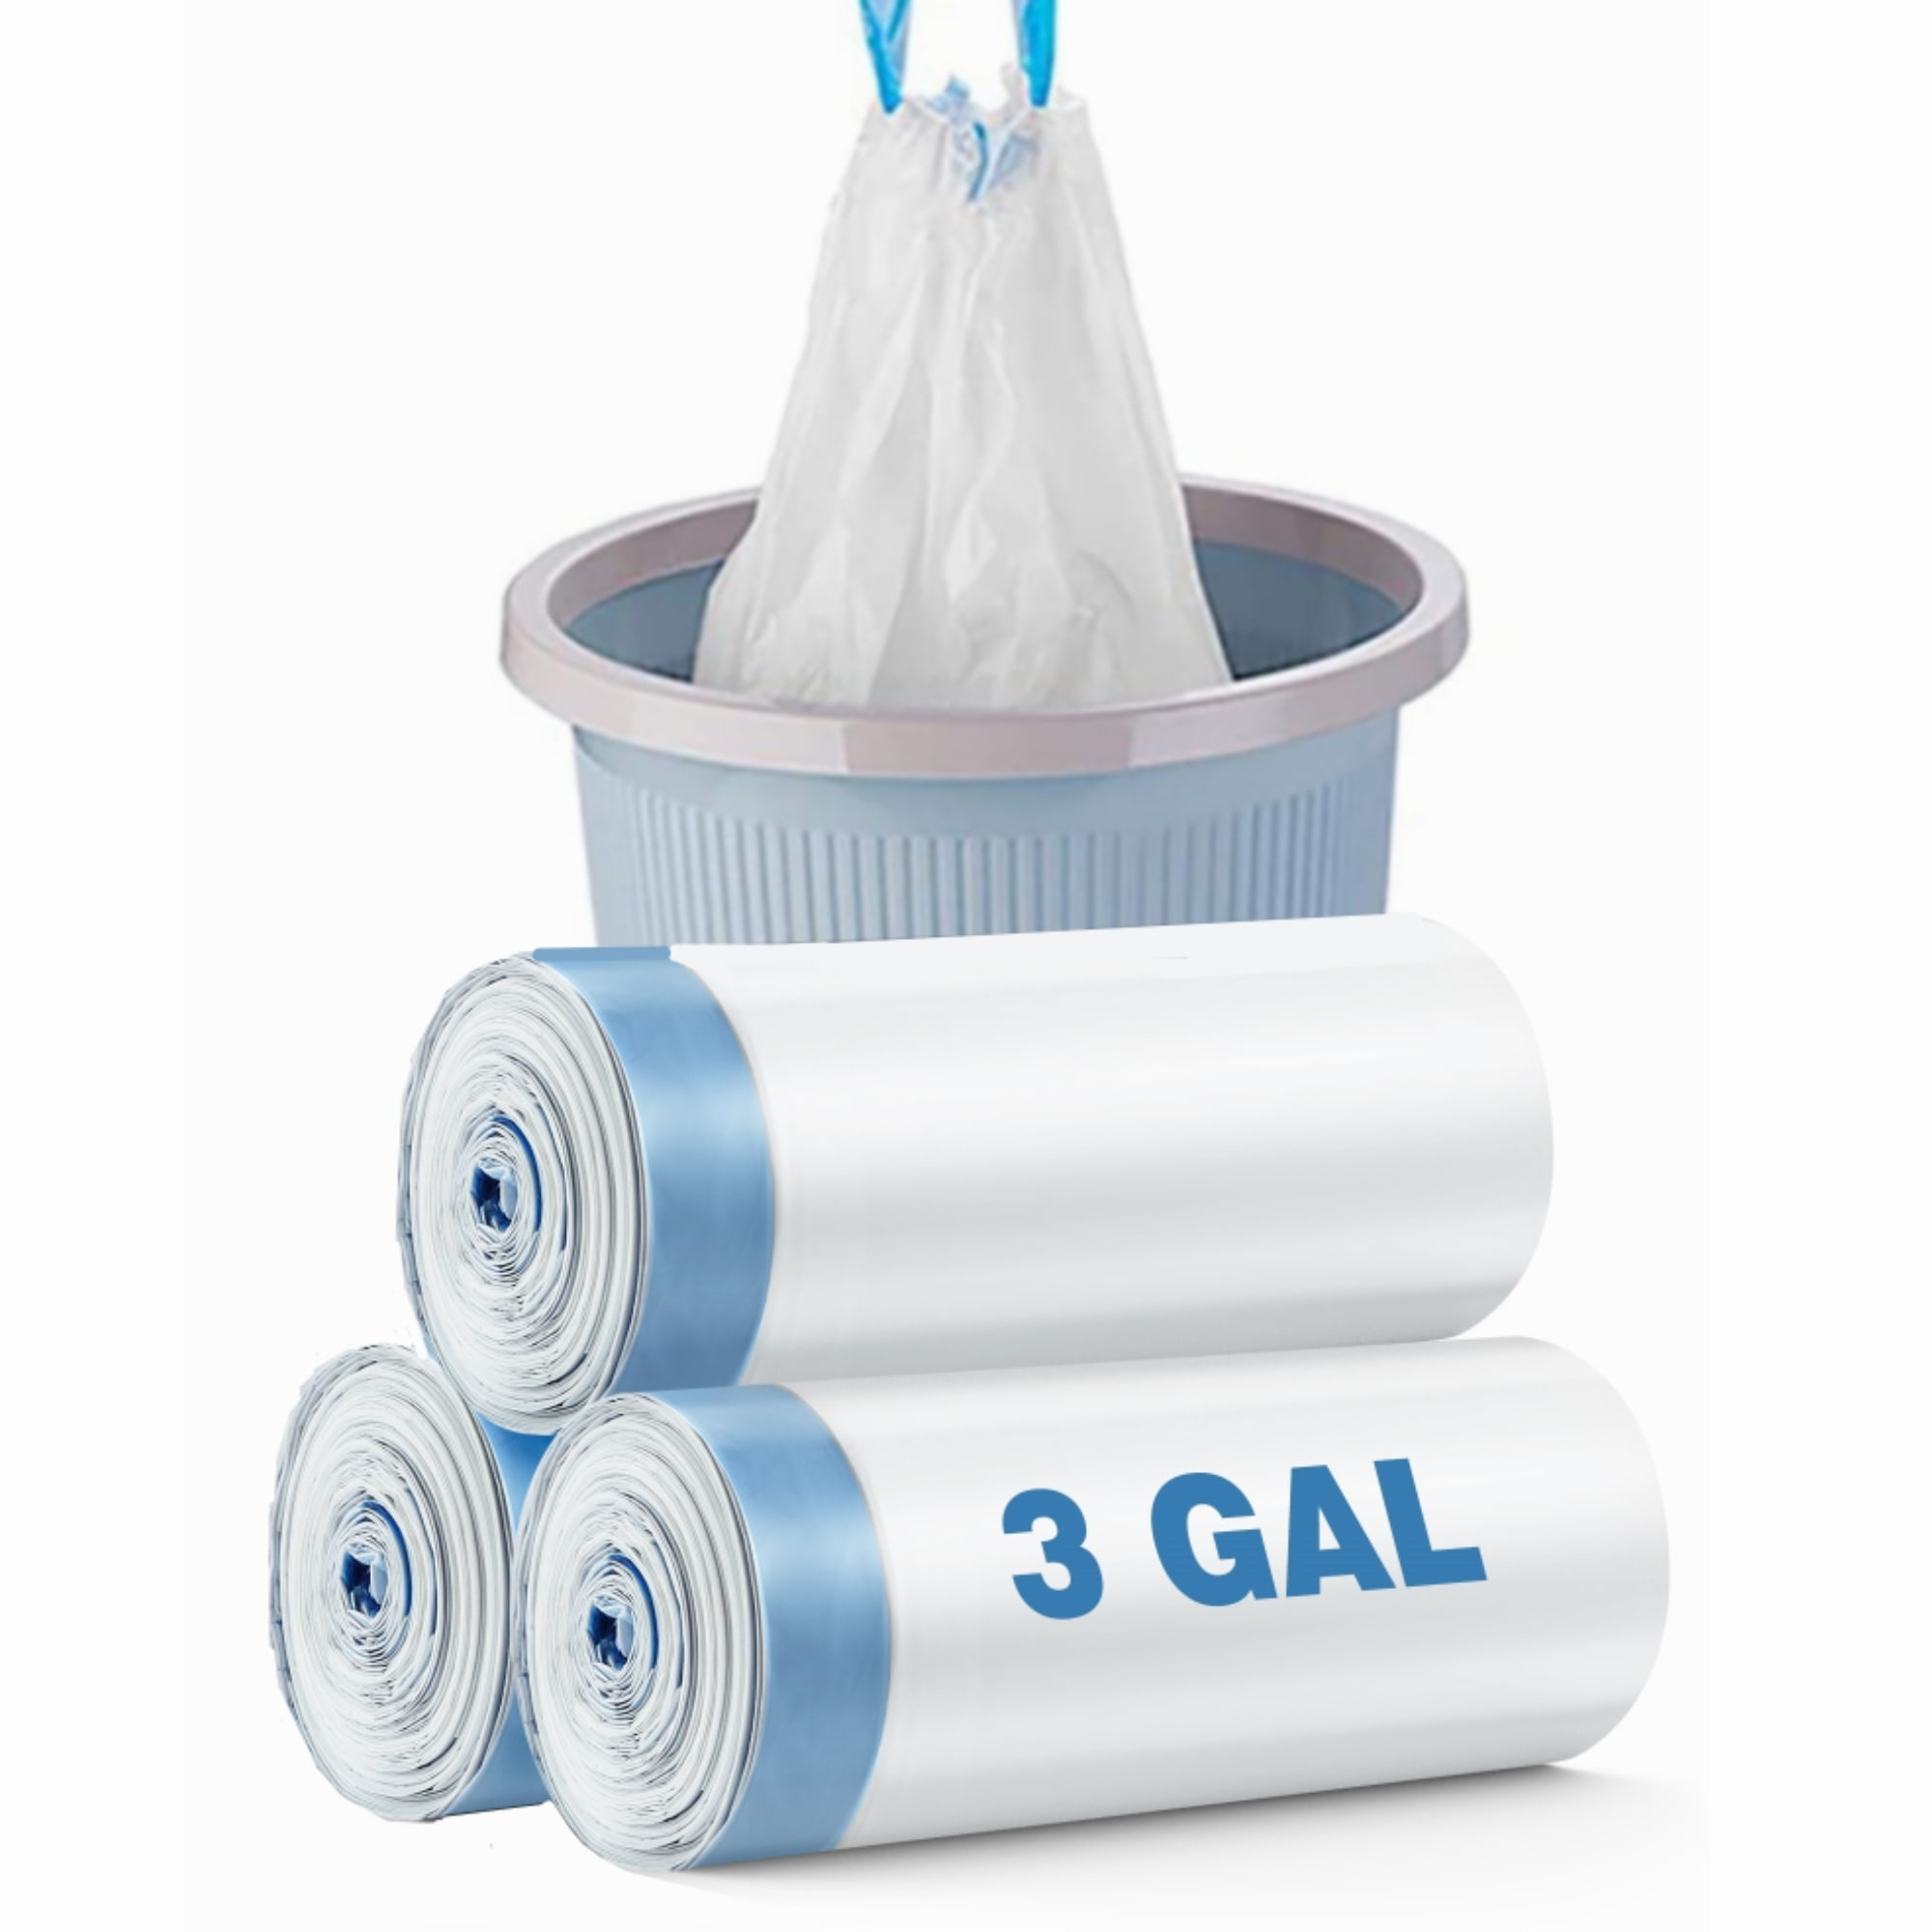 Comprar Bolsa basura azul plasbel 70x7 en Supermercados MAS Online